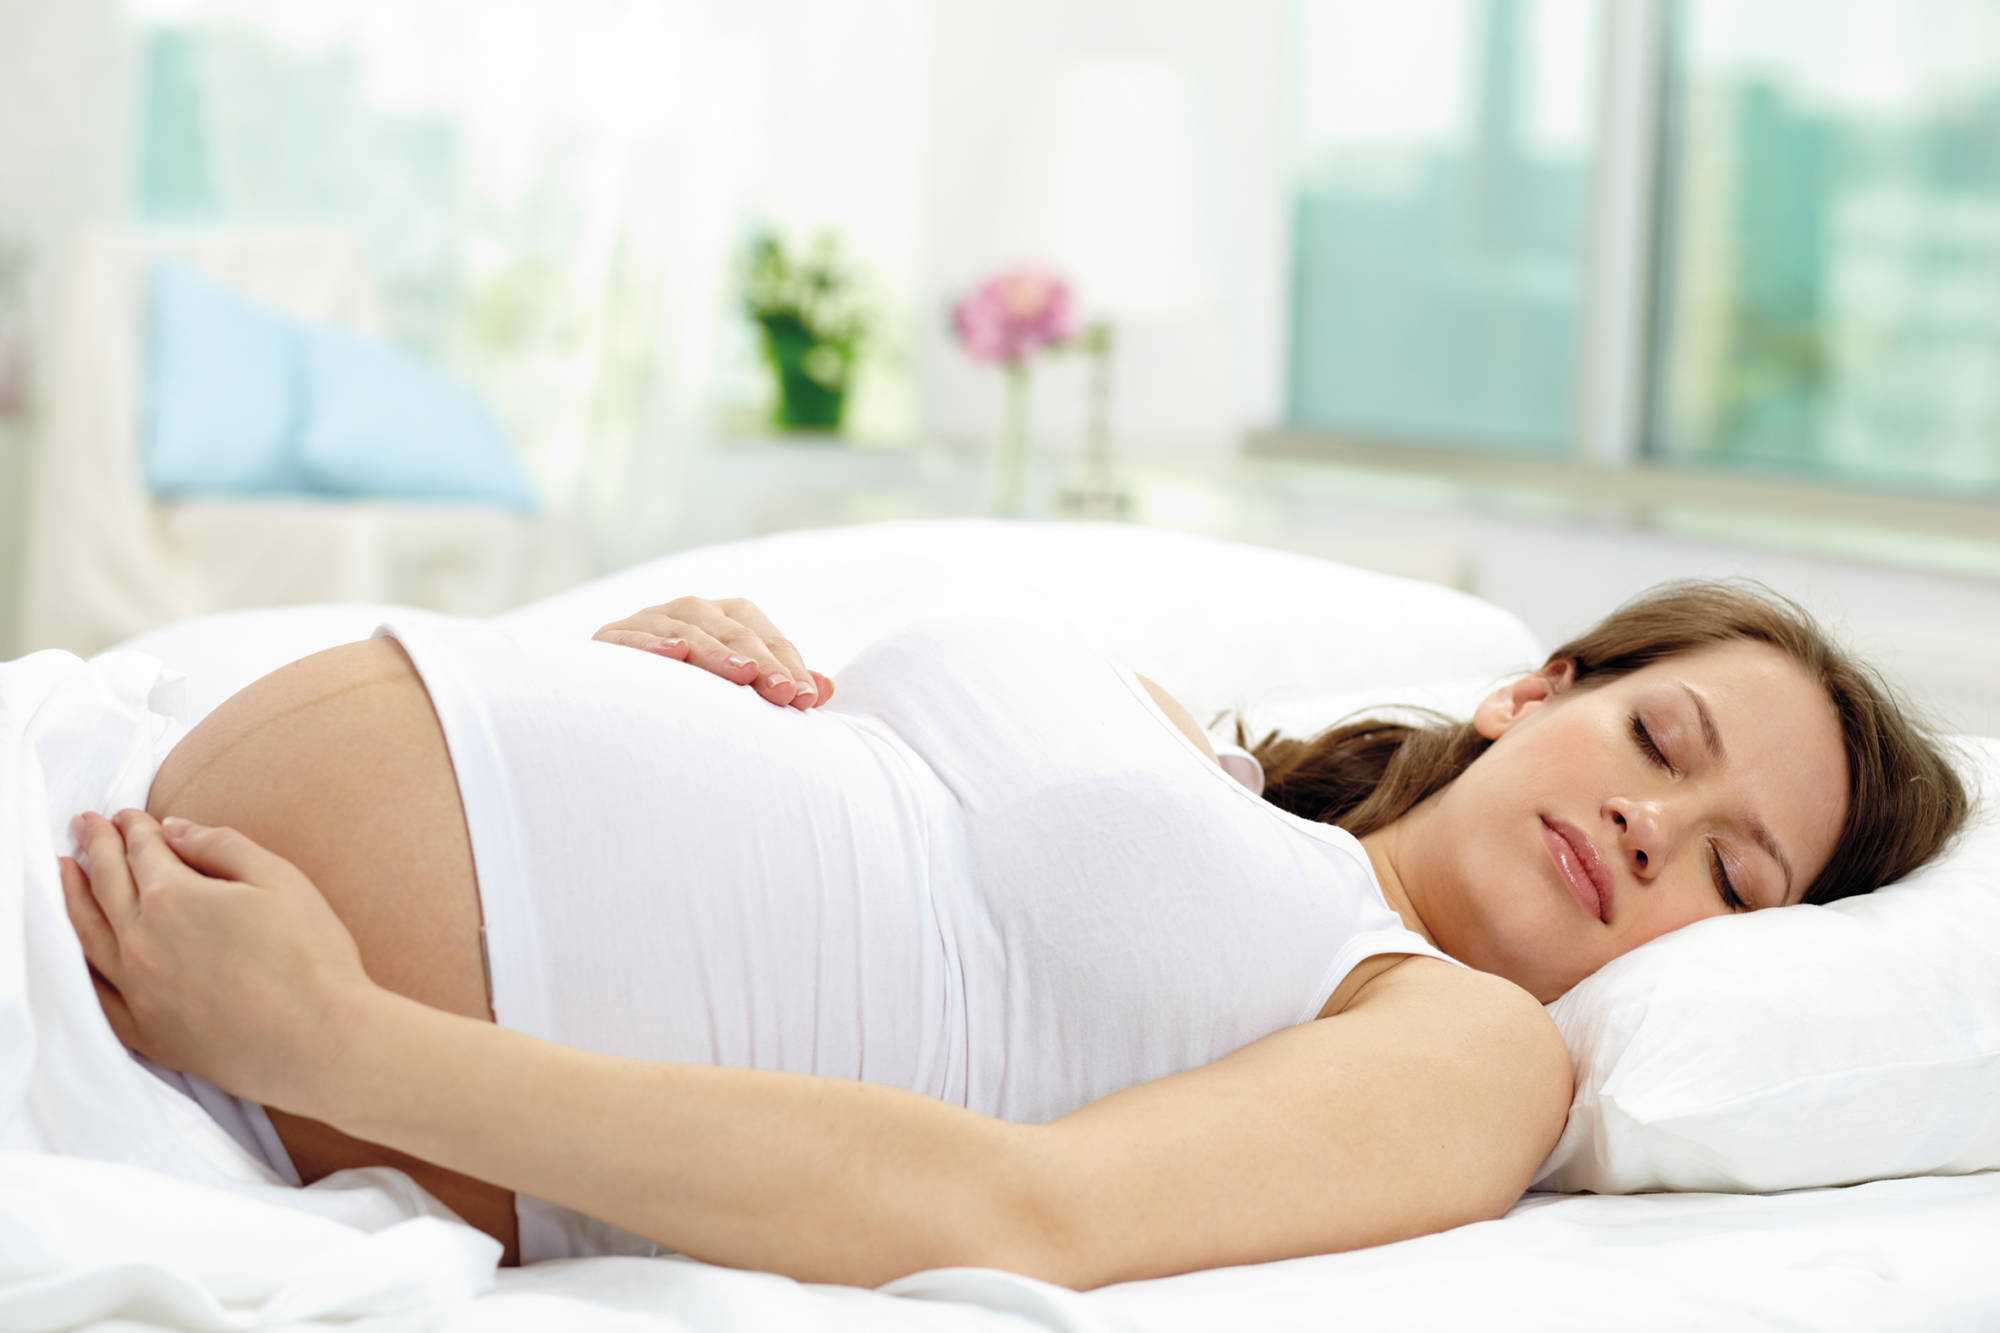 Не верьте мифам – спросите эксперта! дисплазия шейки матки при беременности: можно ли сохранить, выносить и родить?